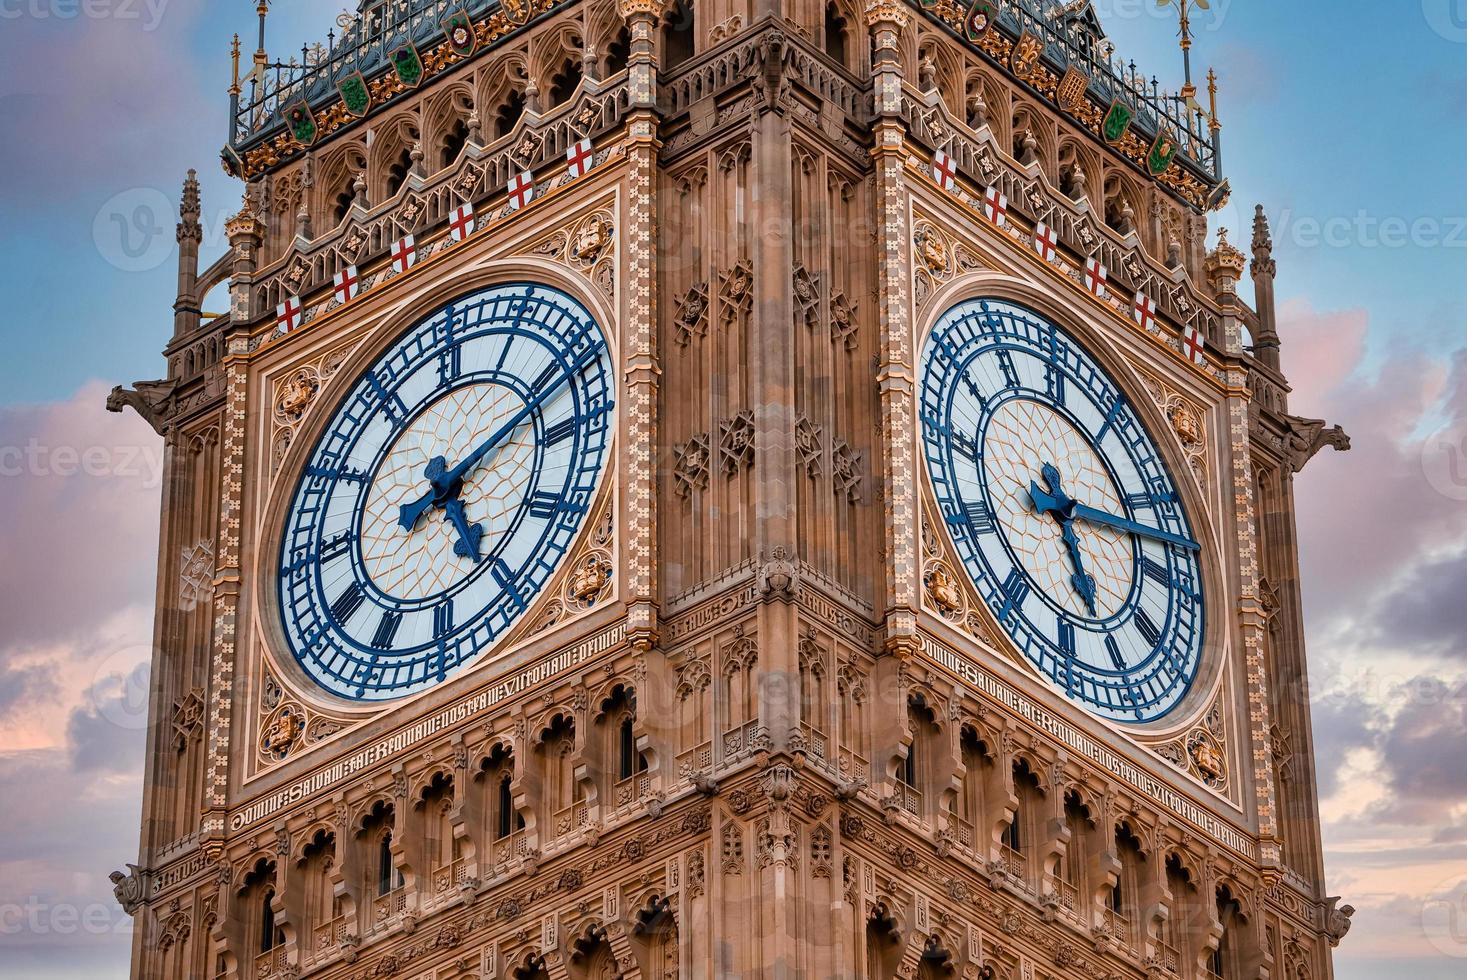 dichtbij omhoog visie van de groot ben klok toren en Westminster in Londen. foto